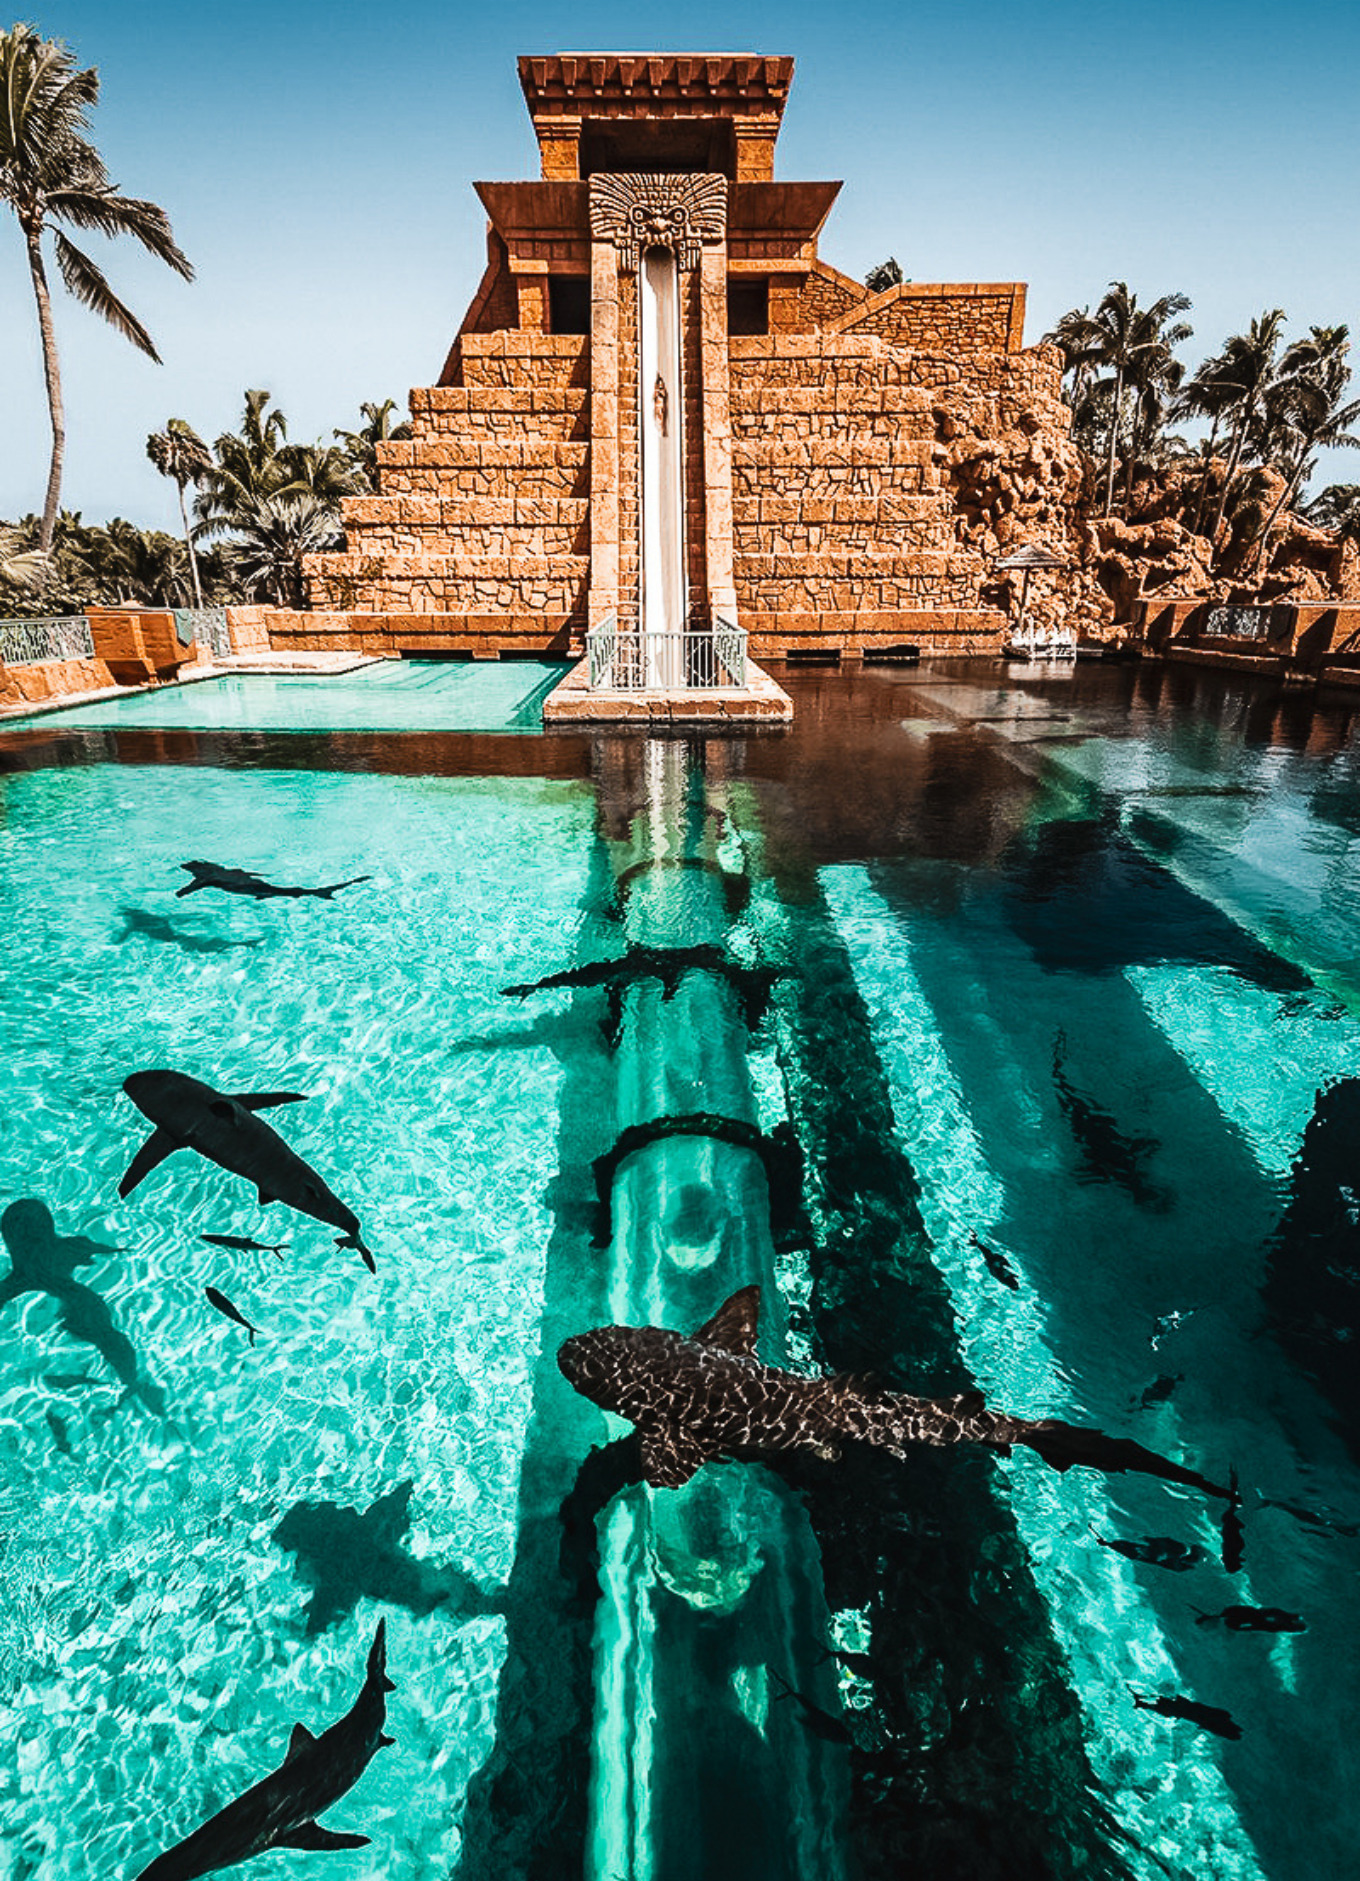 Atlantis' Leap of Faith Slide at its Aquaventure water theme park.